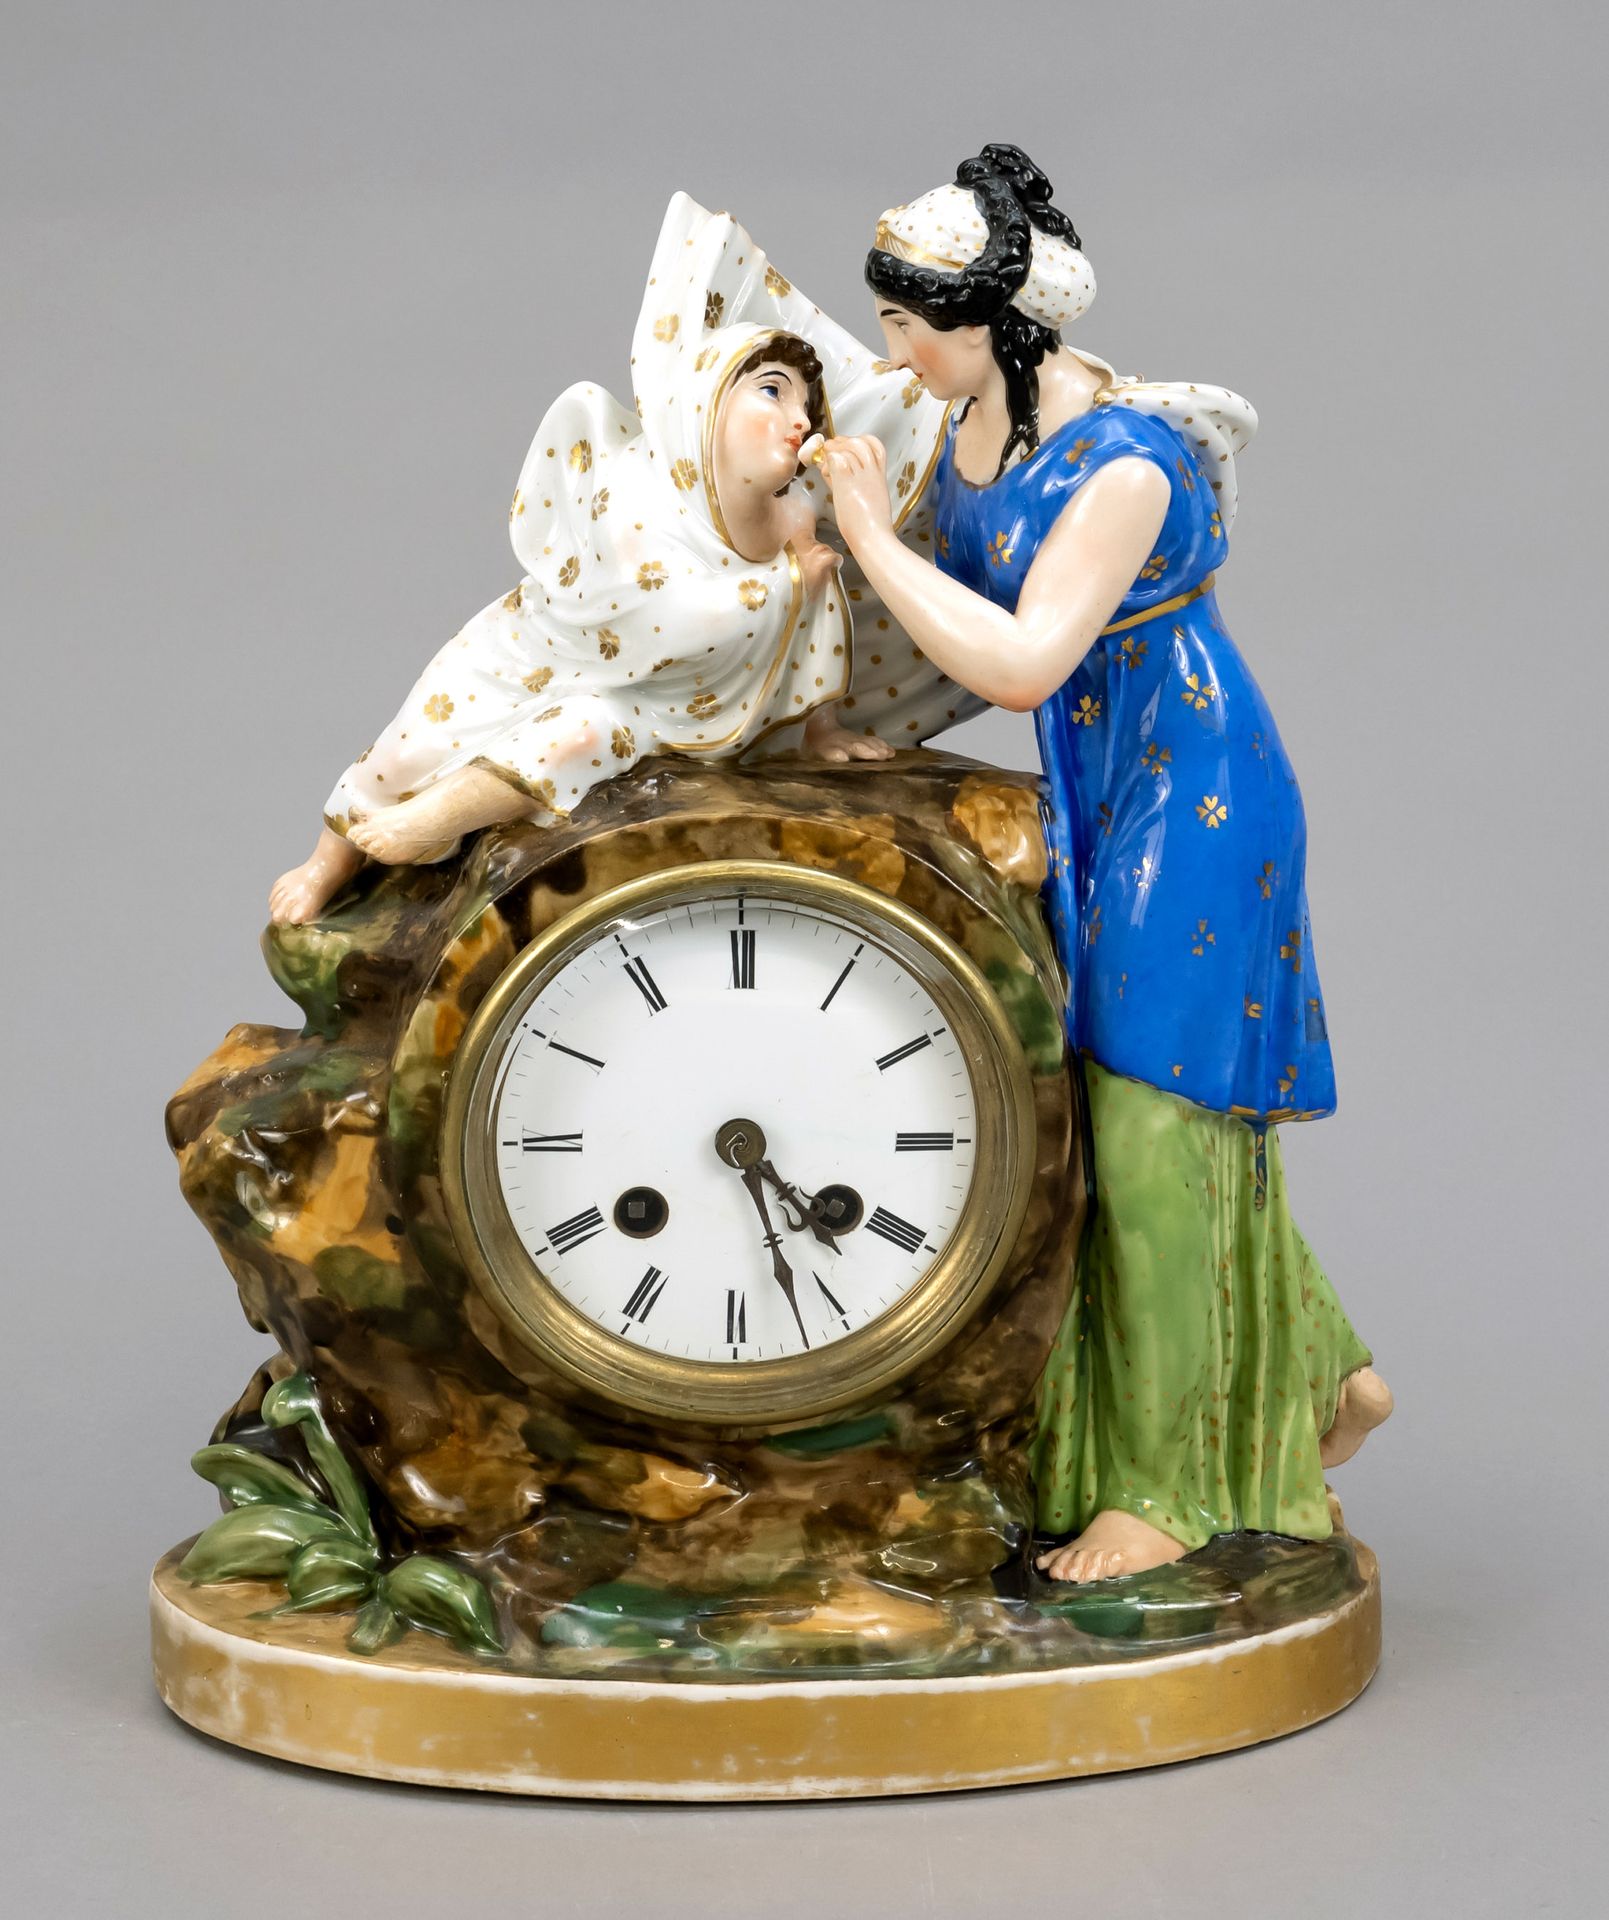 Null 一个具象的壁炉钟，法国，19世纪，圆形玻璃罩后面的珐琅表盘上有罗马数字，机芯上有铃铛，镶嵌在一个岩石形状的瓷盒里，还有两个人物，一个母亲在喂她的孩子，&hellip;